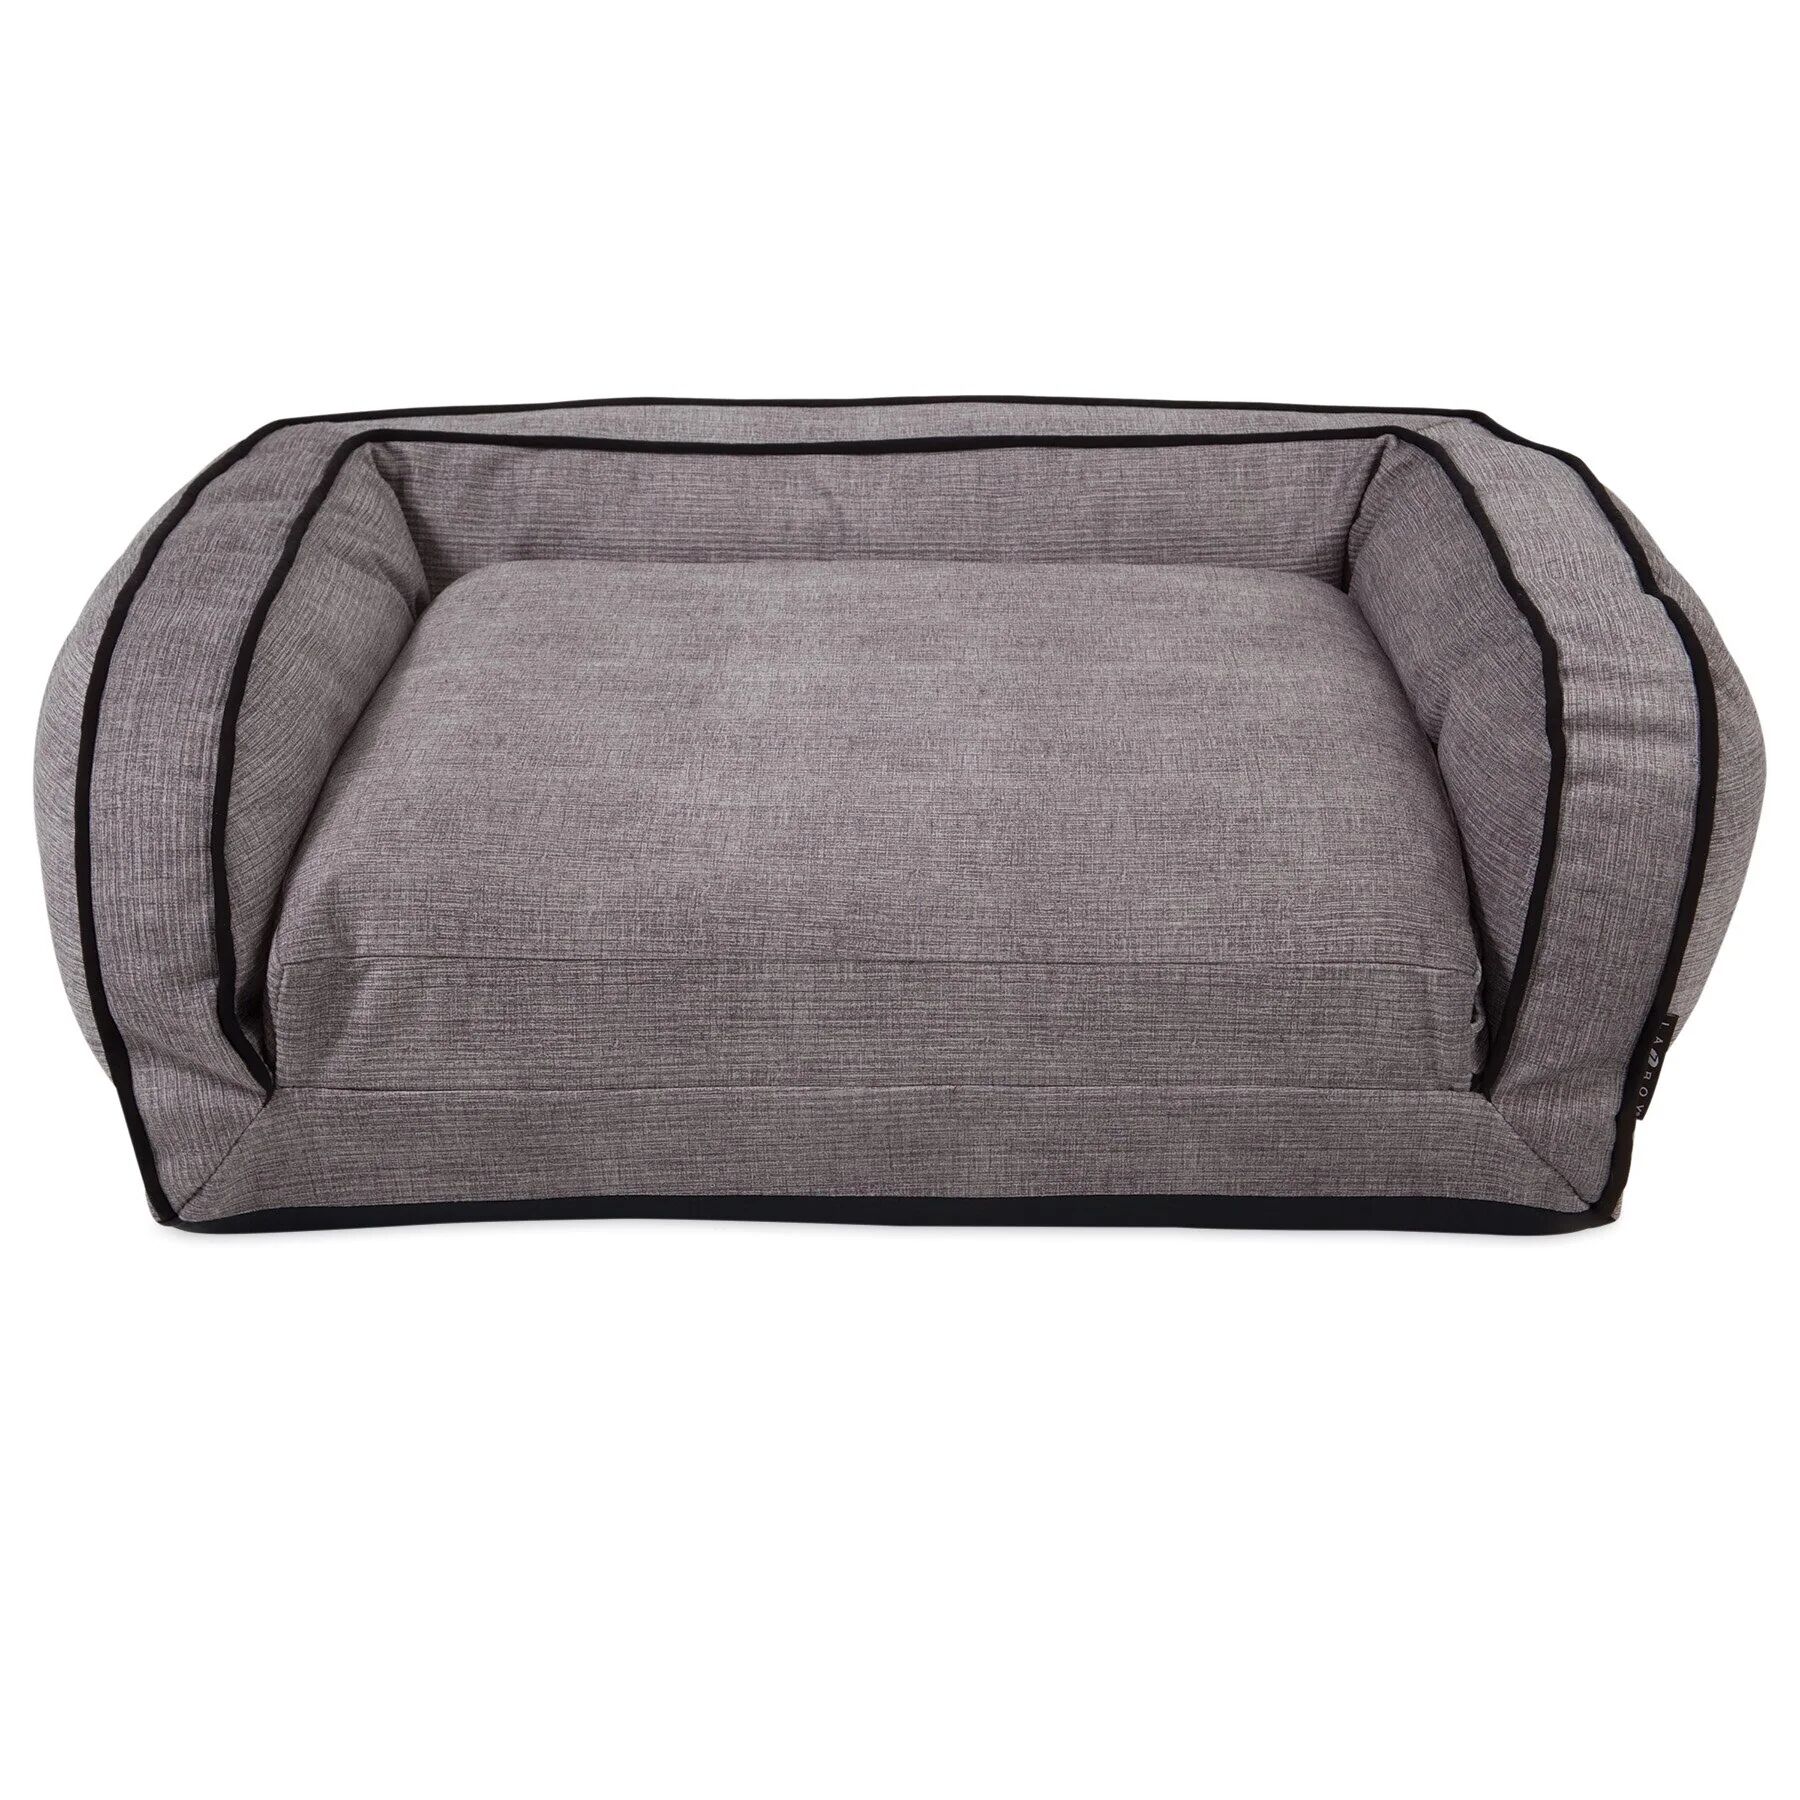 La-Z-Boy Duchess Fold Out Sleeper Sofa Dog Bed